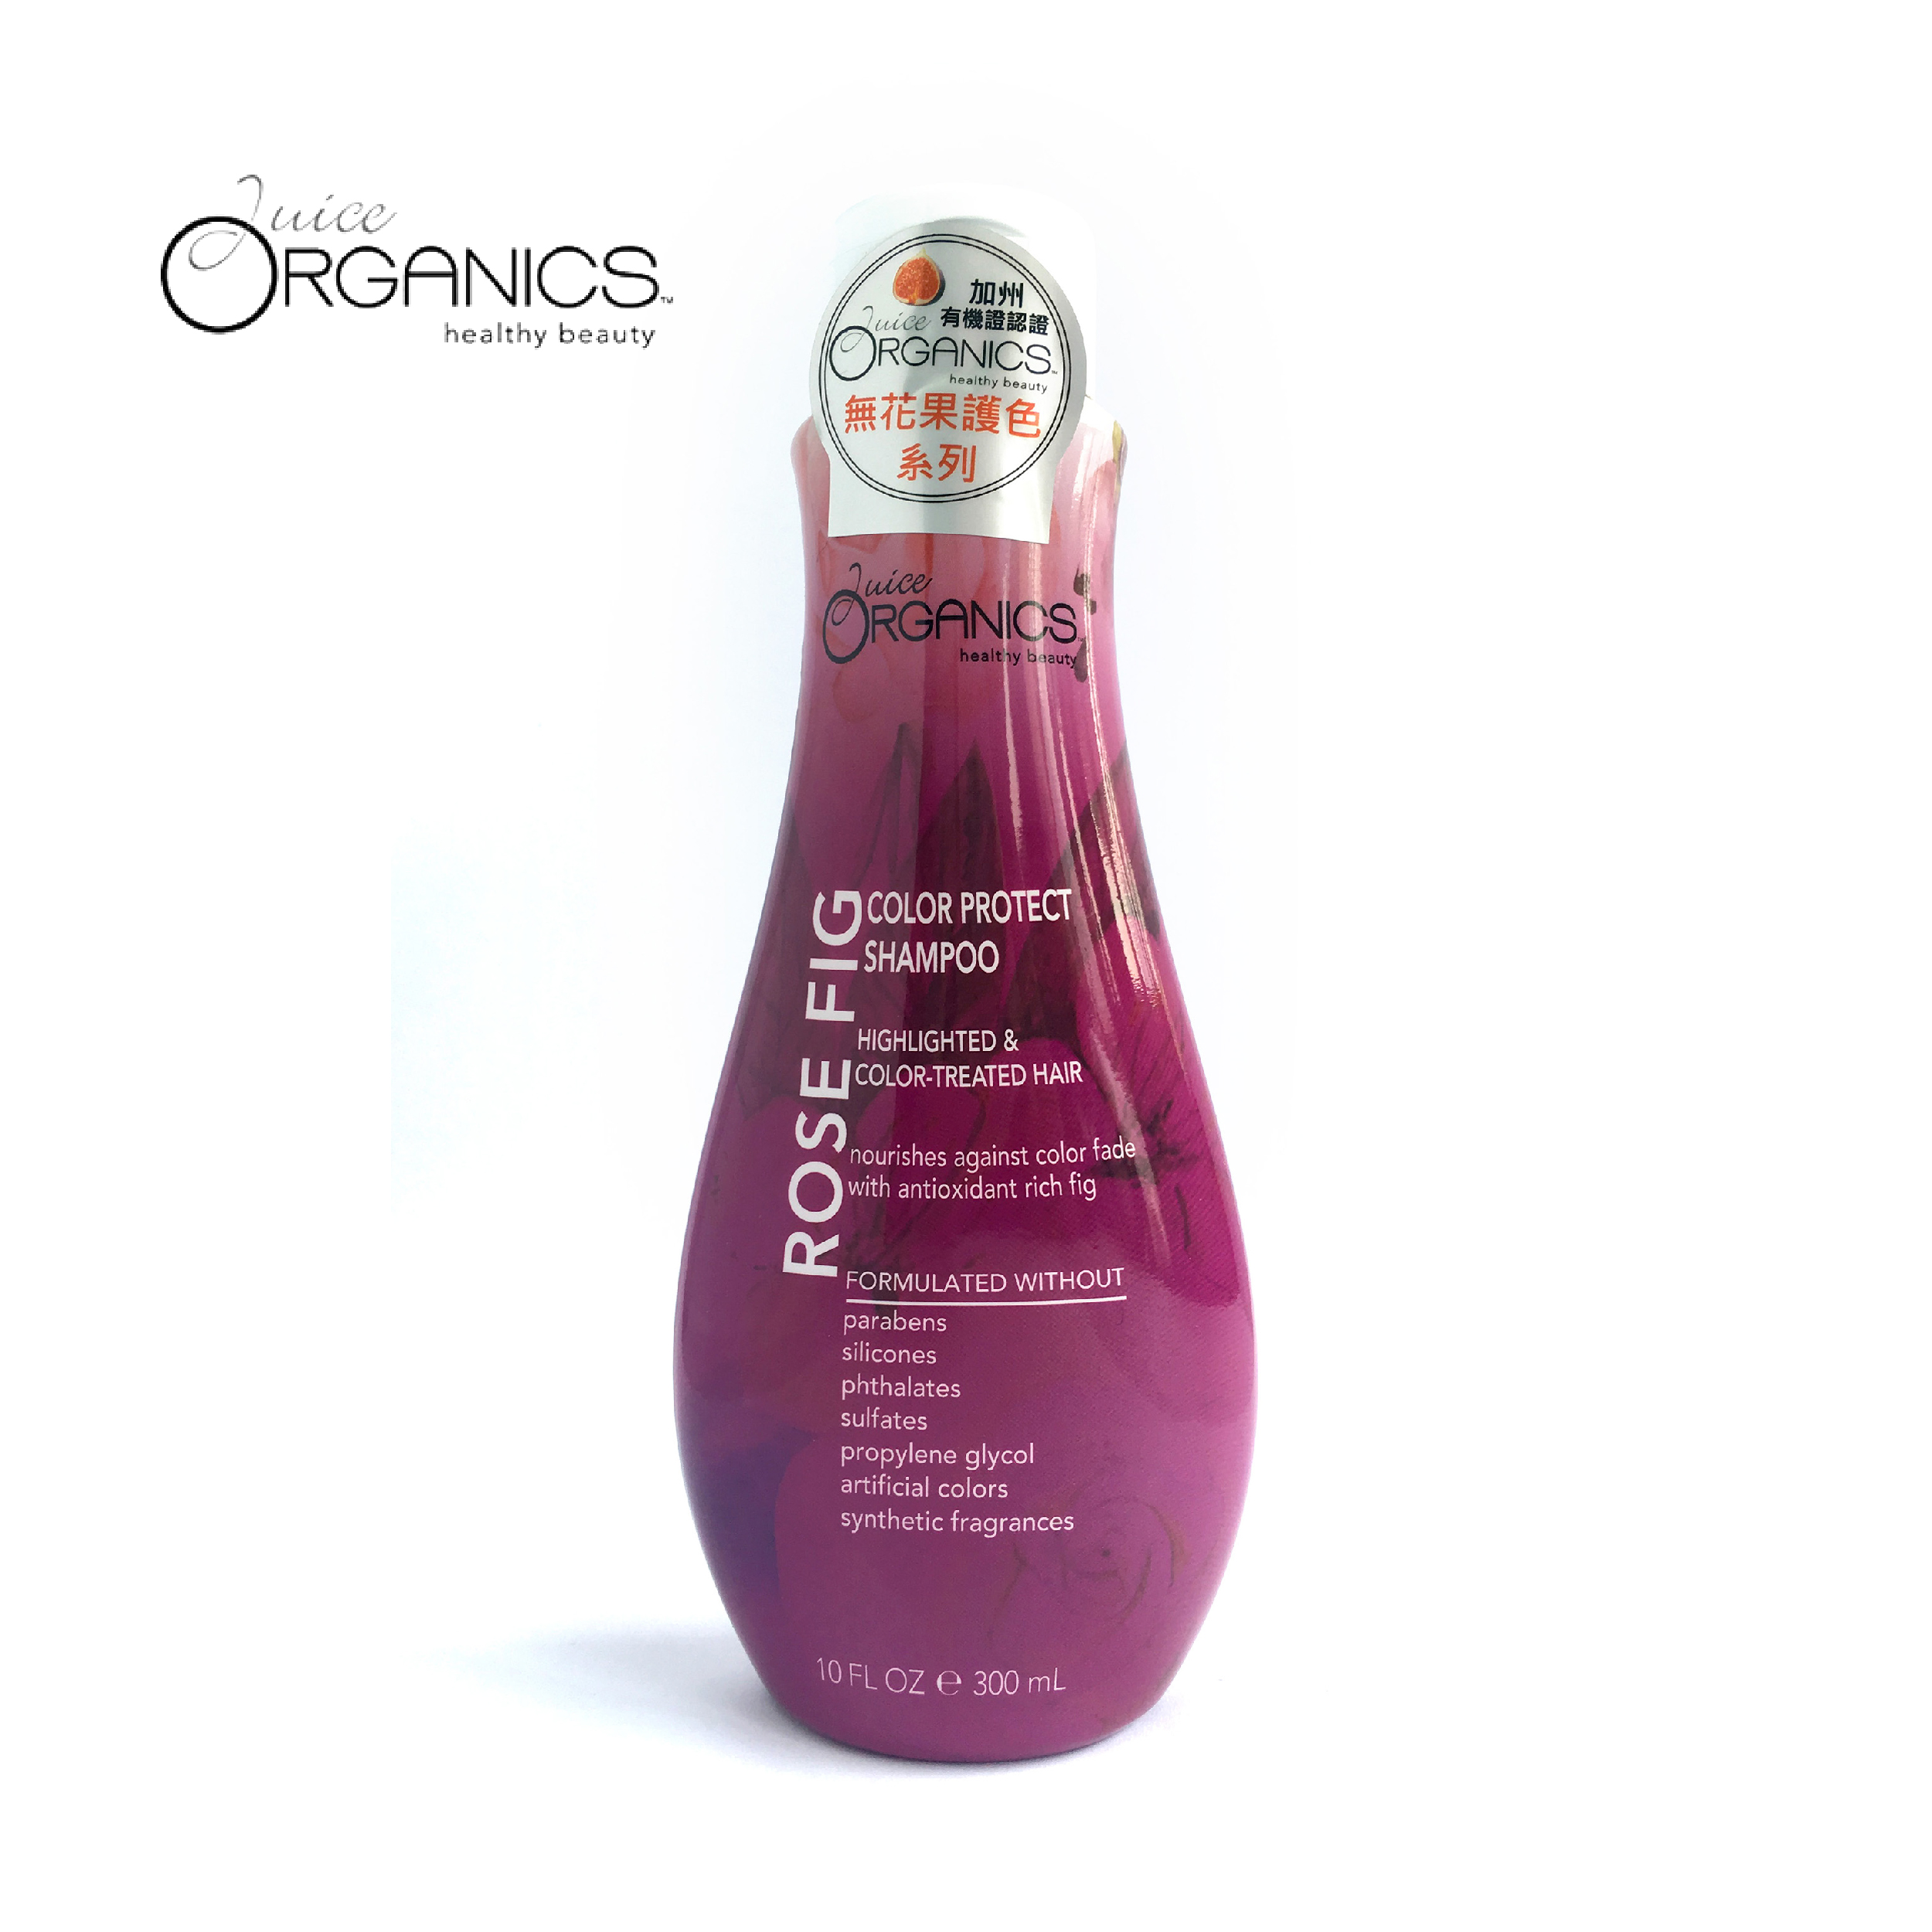 Juice Organics 有机无花果护色洗发乳 300ml